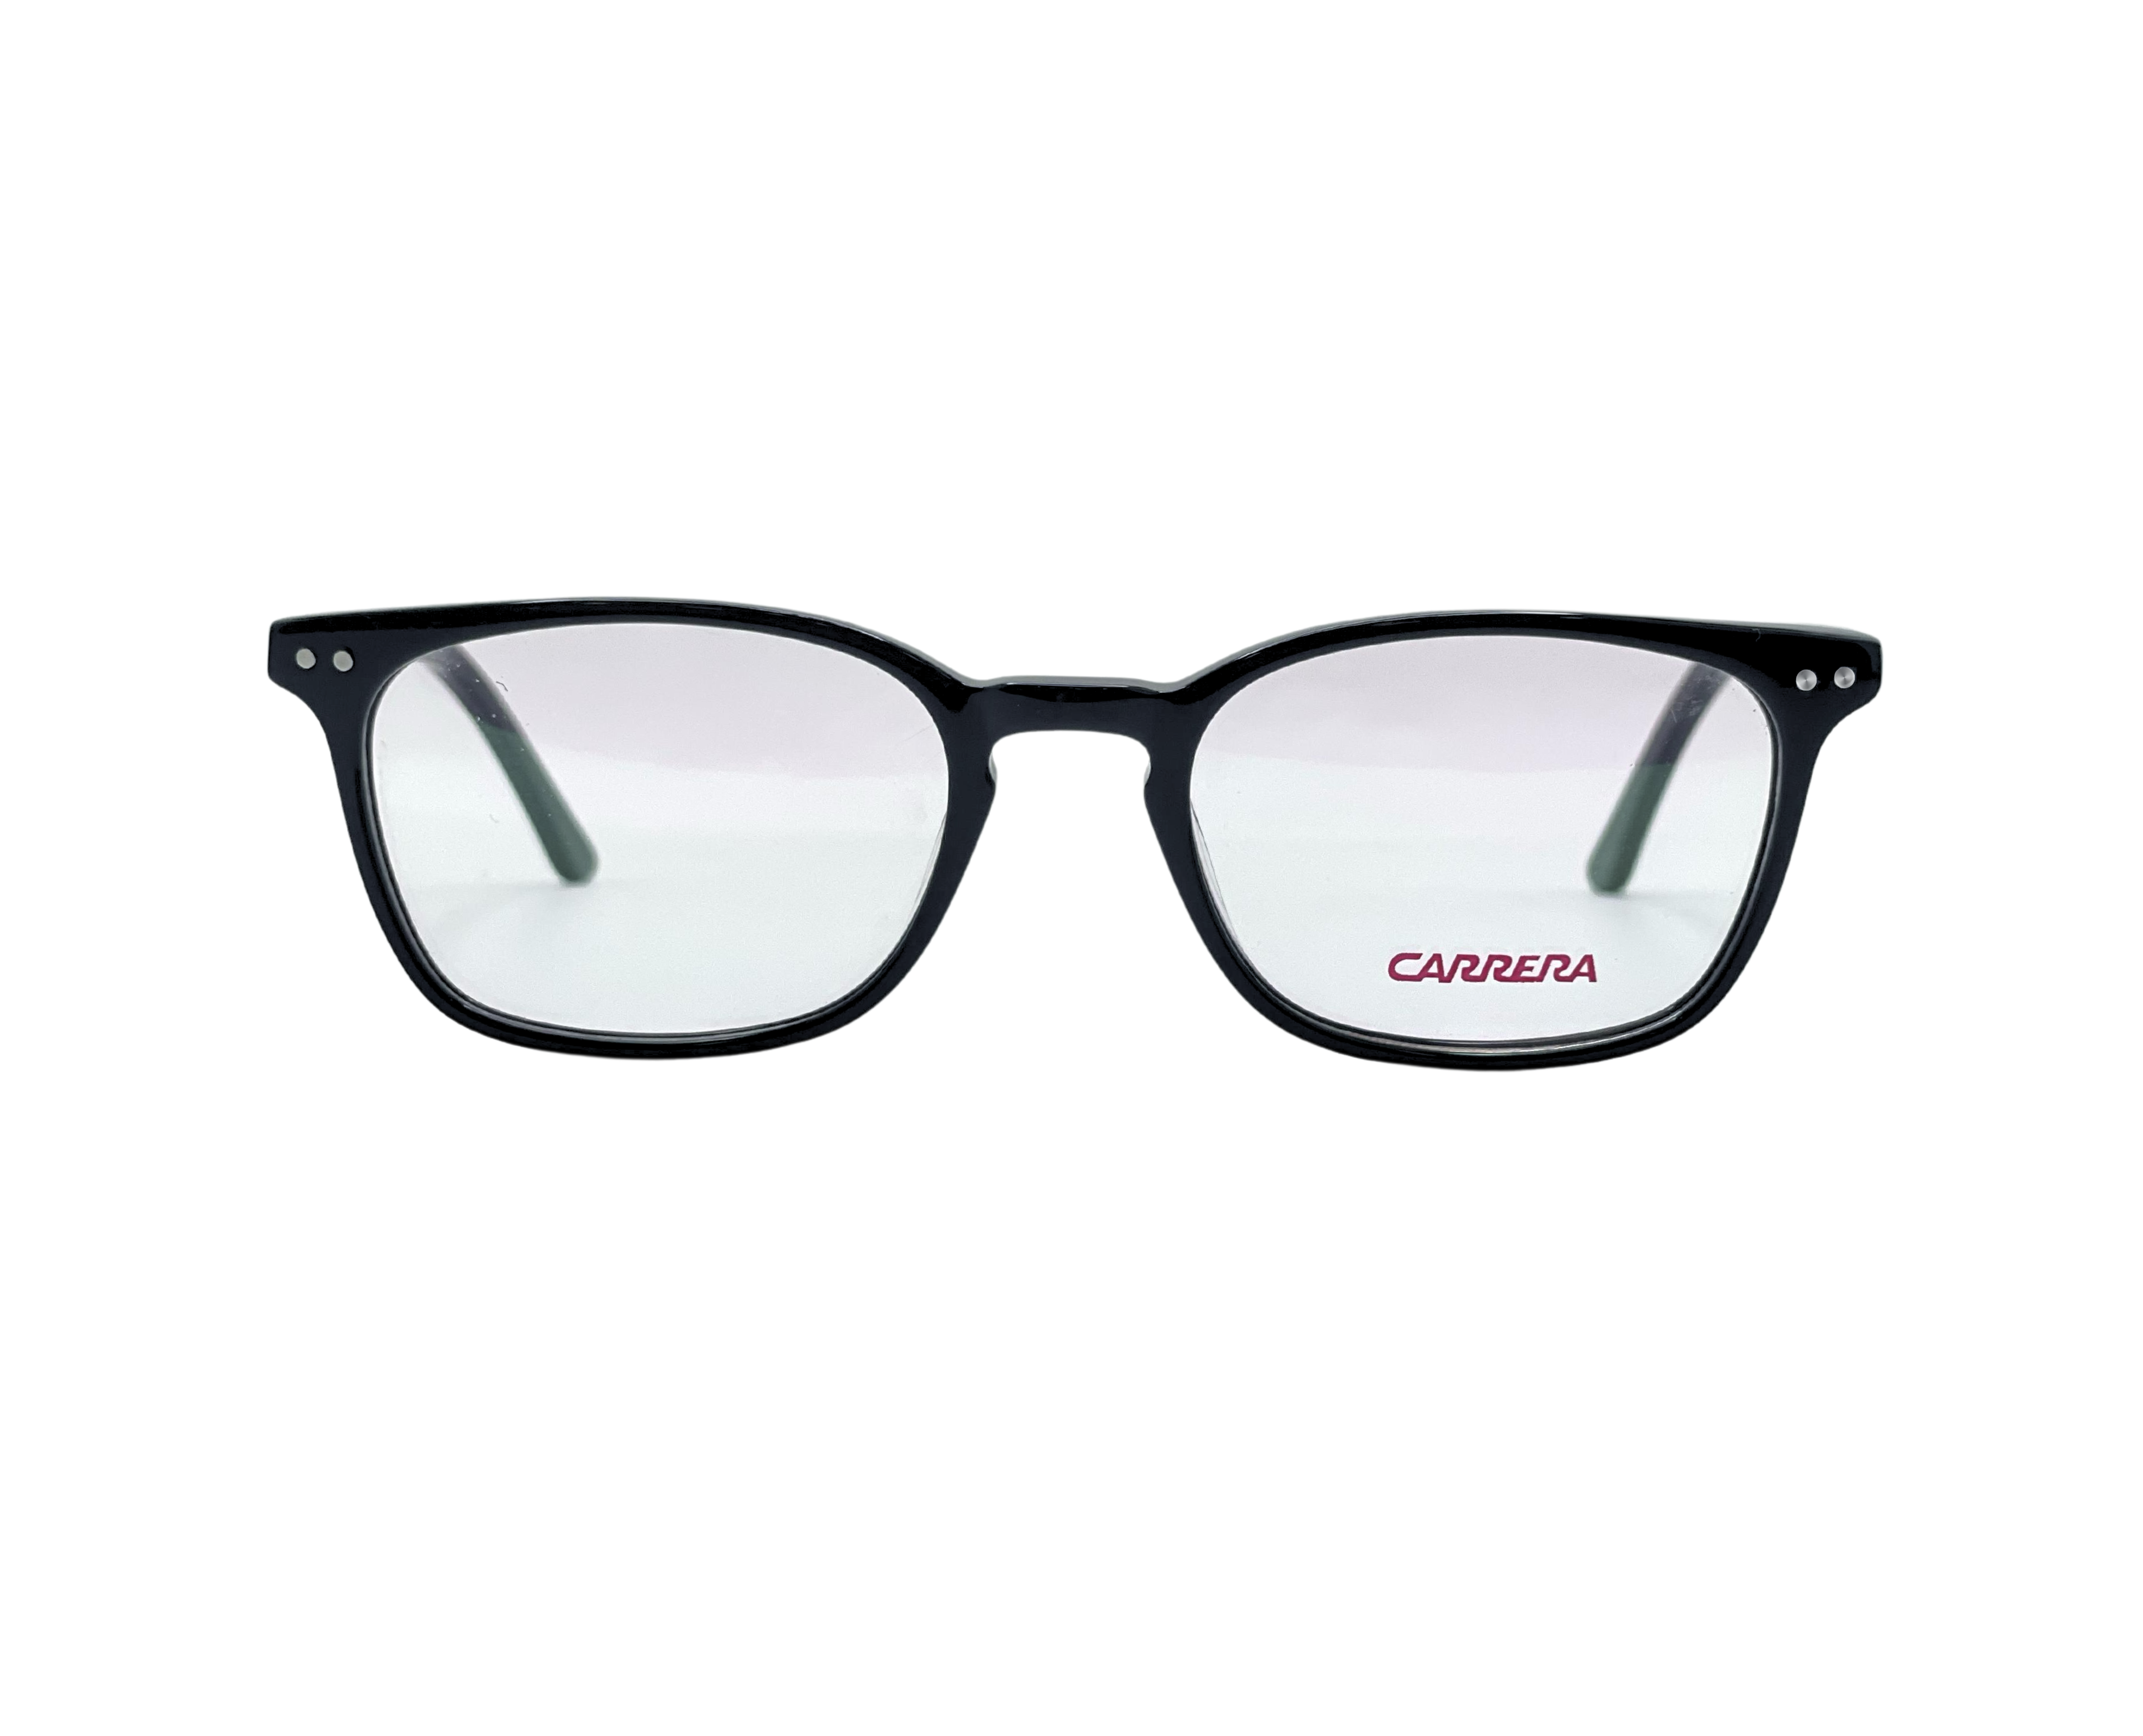 NS Classic - 6175 - Black - Eyeglasses